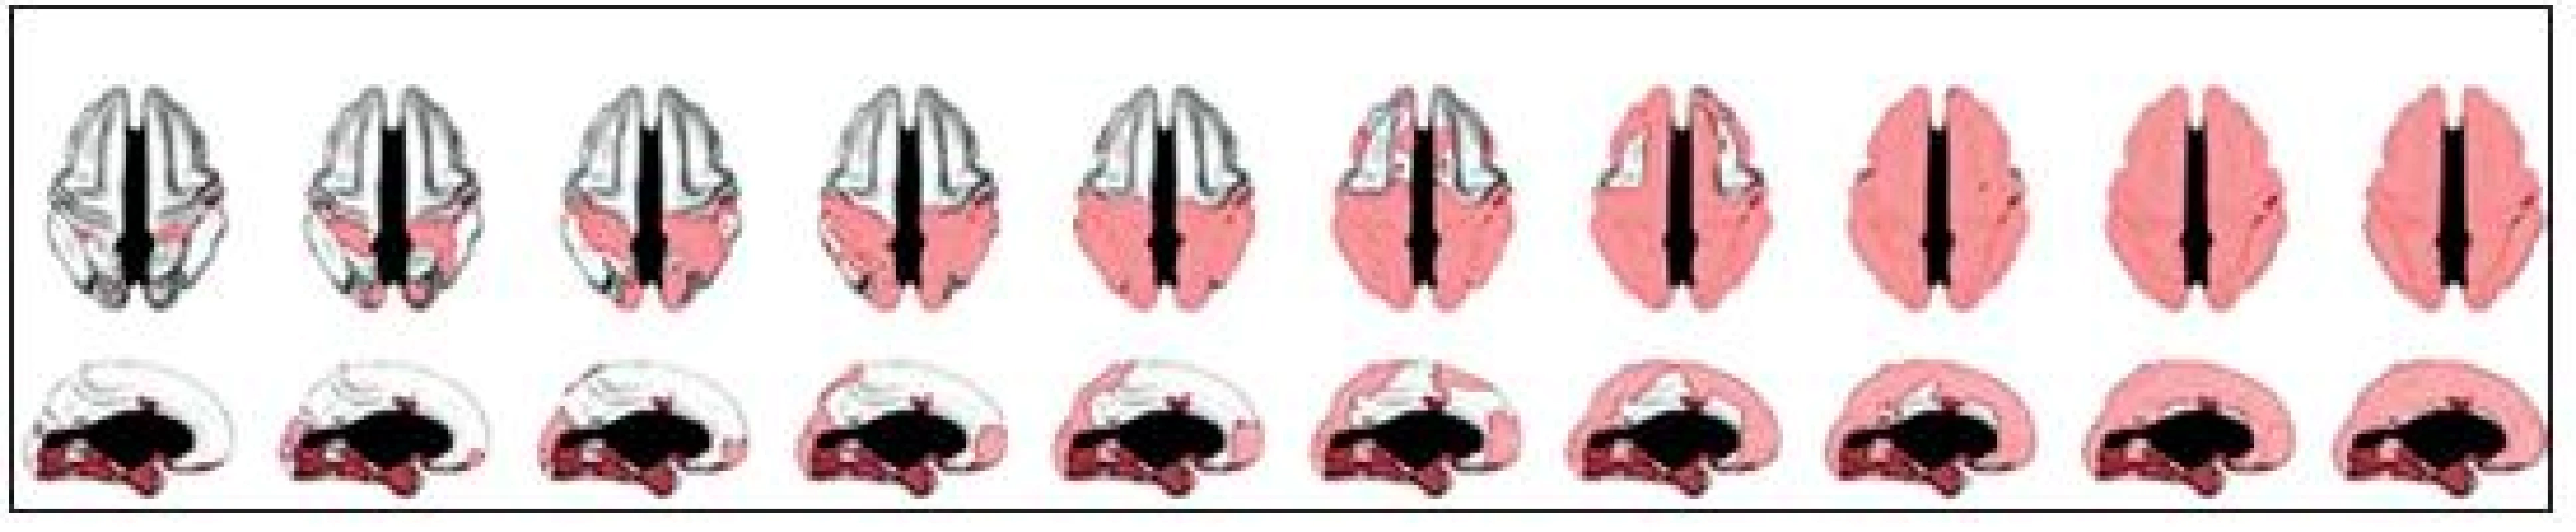 Zleva doprava: růst regionální tloušťky mozkové kůry v dvouletých odstupech počínaje věkem 7 let, první nabývají senzorické a motorické korové oblasti, následují temenní a spánkové laloky, poslední jsou prefrontální korové oblasti (42).